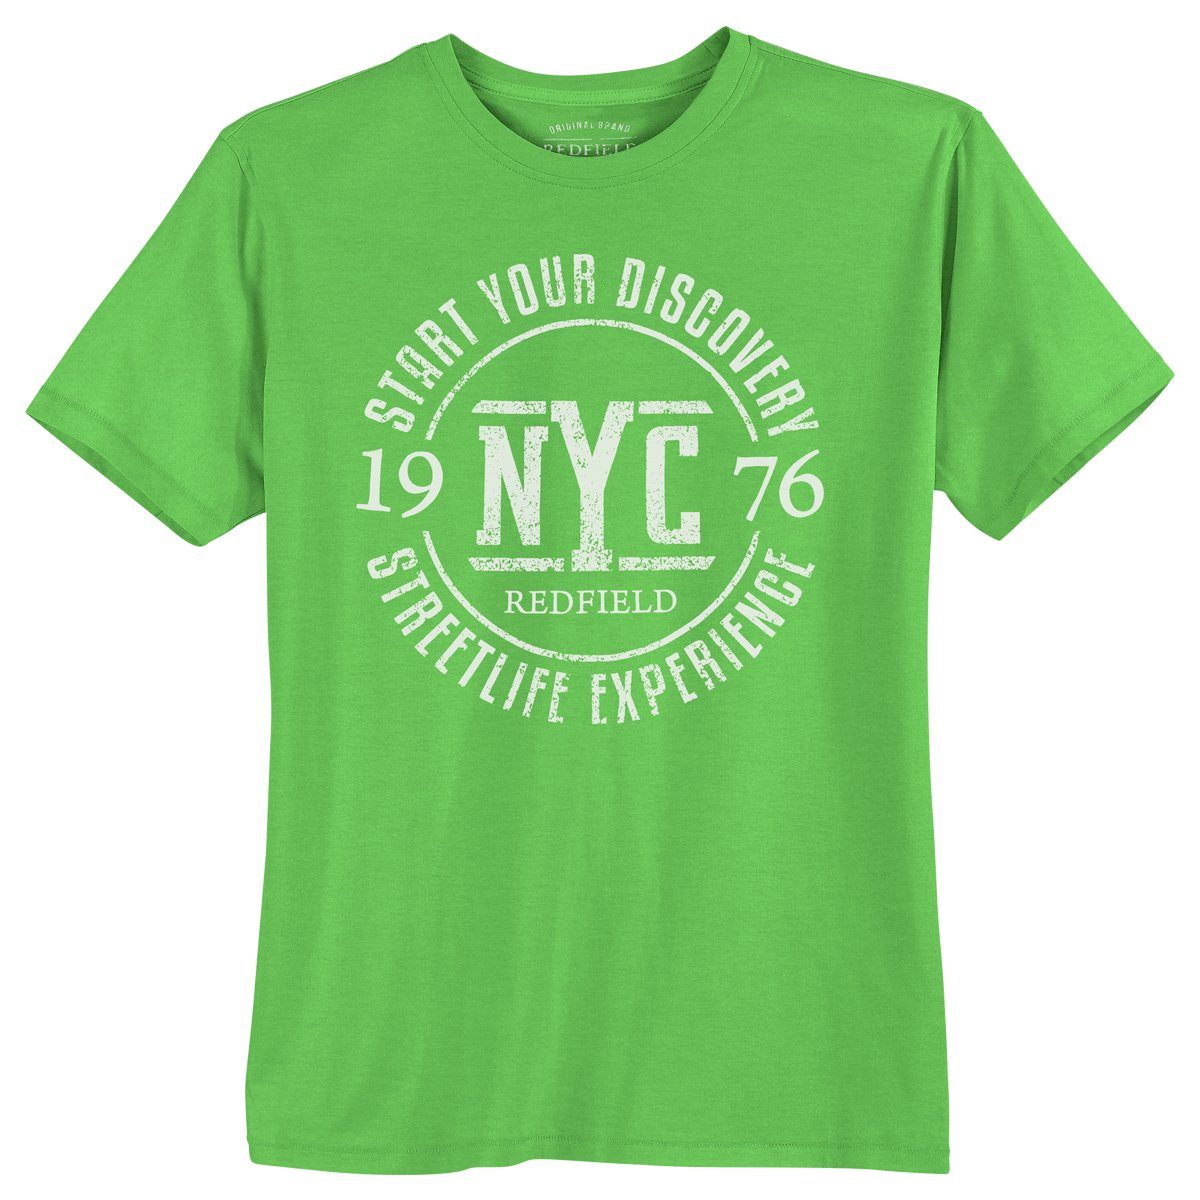 redfield Rundhalsshirt Große Größen T-Shirt grün Print 1976 NYC Redfield